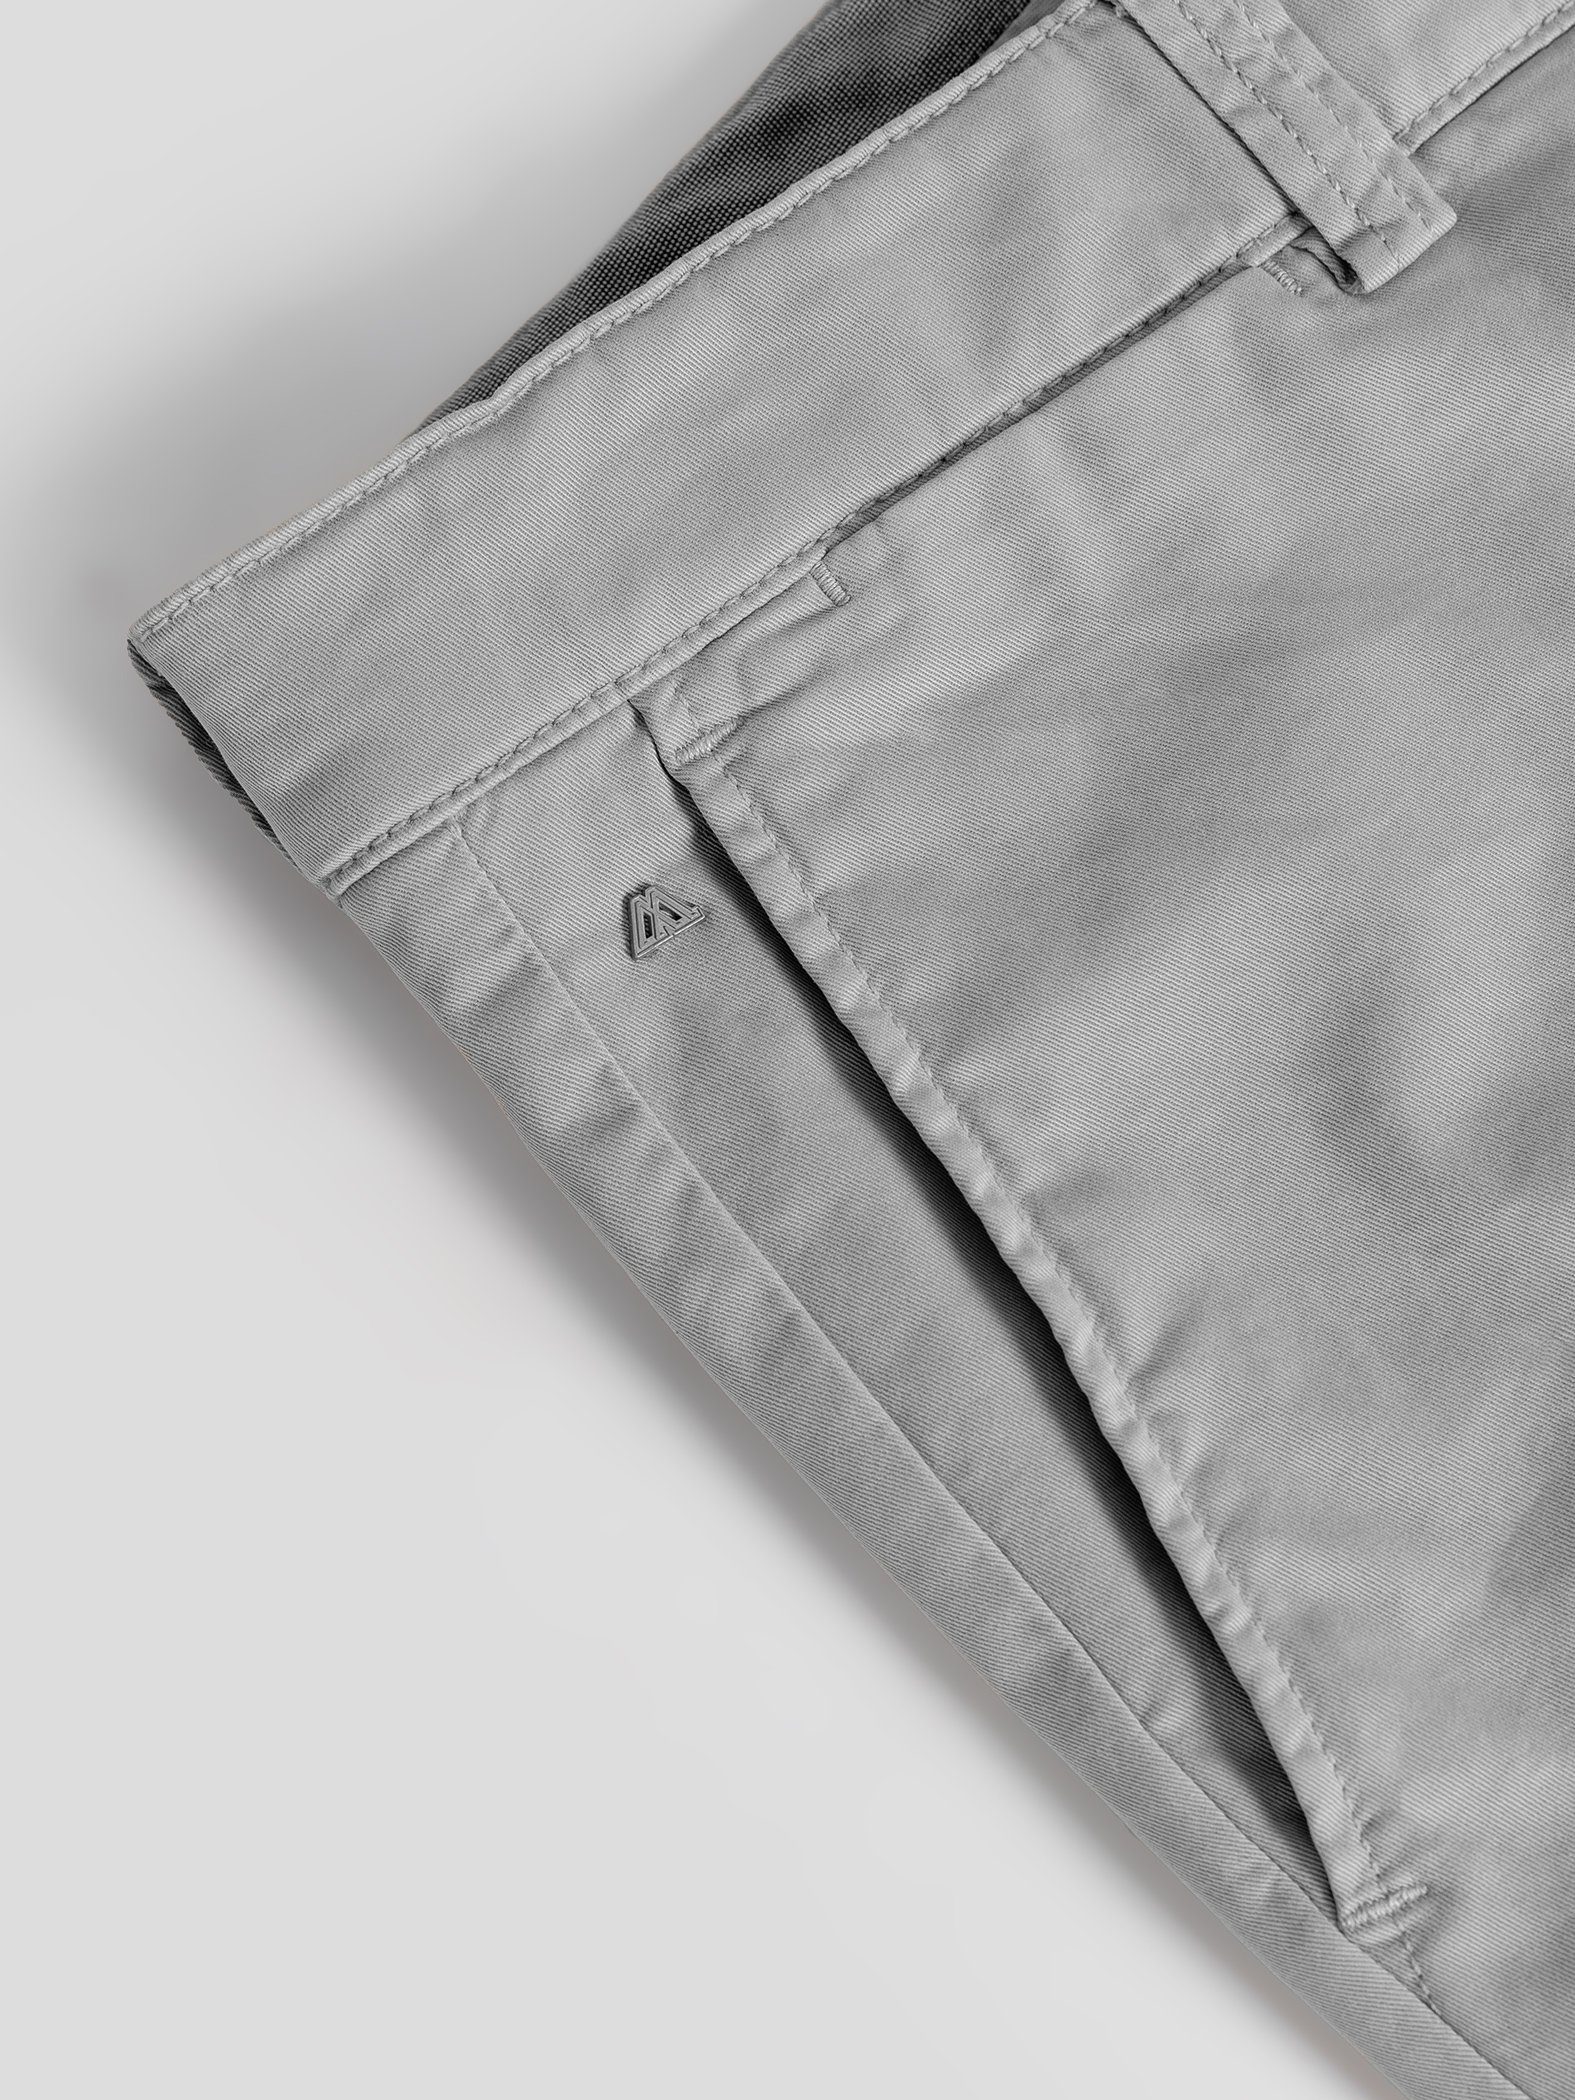 TwoMates Shorts Shorts Bund, GOTS-zertifiziert hellgrau Farbauswahl, elastischem mit